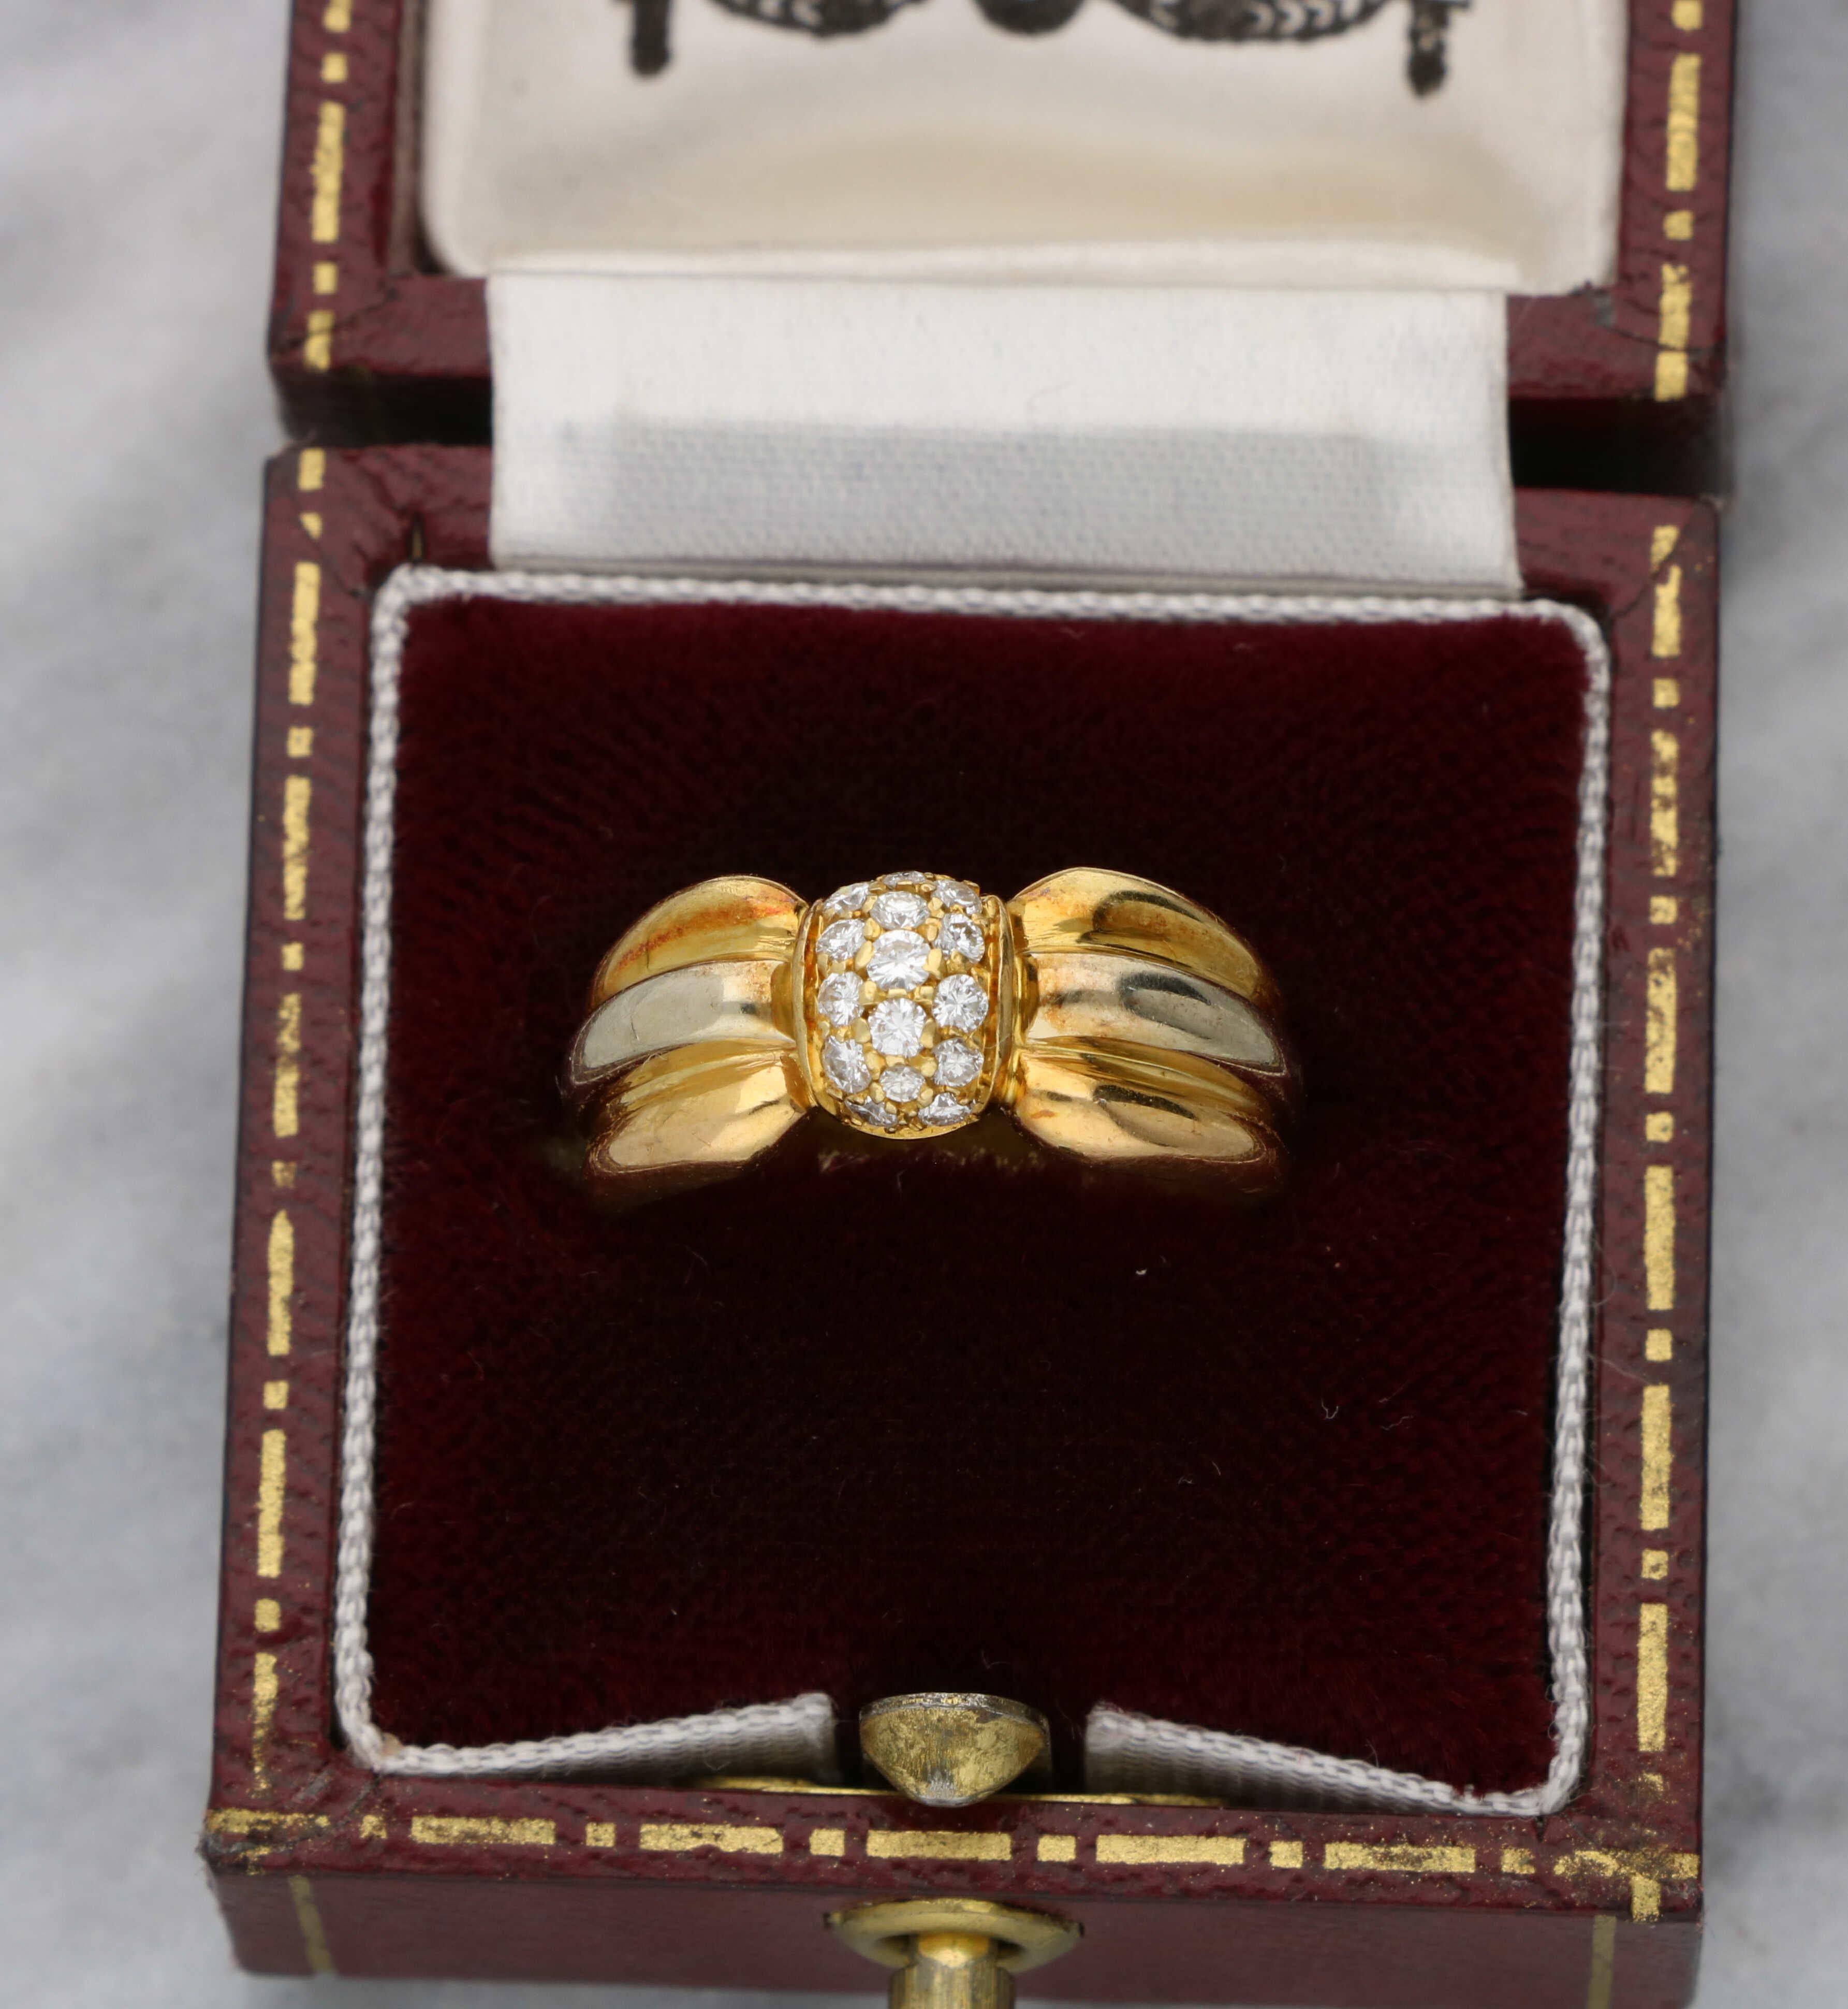 Ravissante bague signée Cartier en or jaune et blanc 18ct sertie de diamants. Le centre serti de diamants mesure 7 mm et est serti d'un diamant estimé à 0,20ct F/G VS. Le bracelet mesure 8 mm de large et pèse 5,3 grammes. Cette bague correspond à